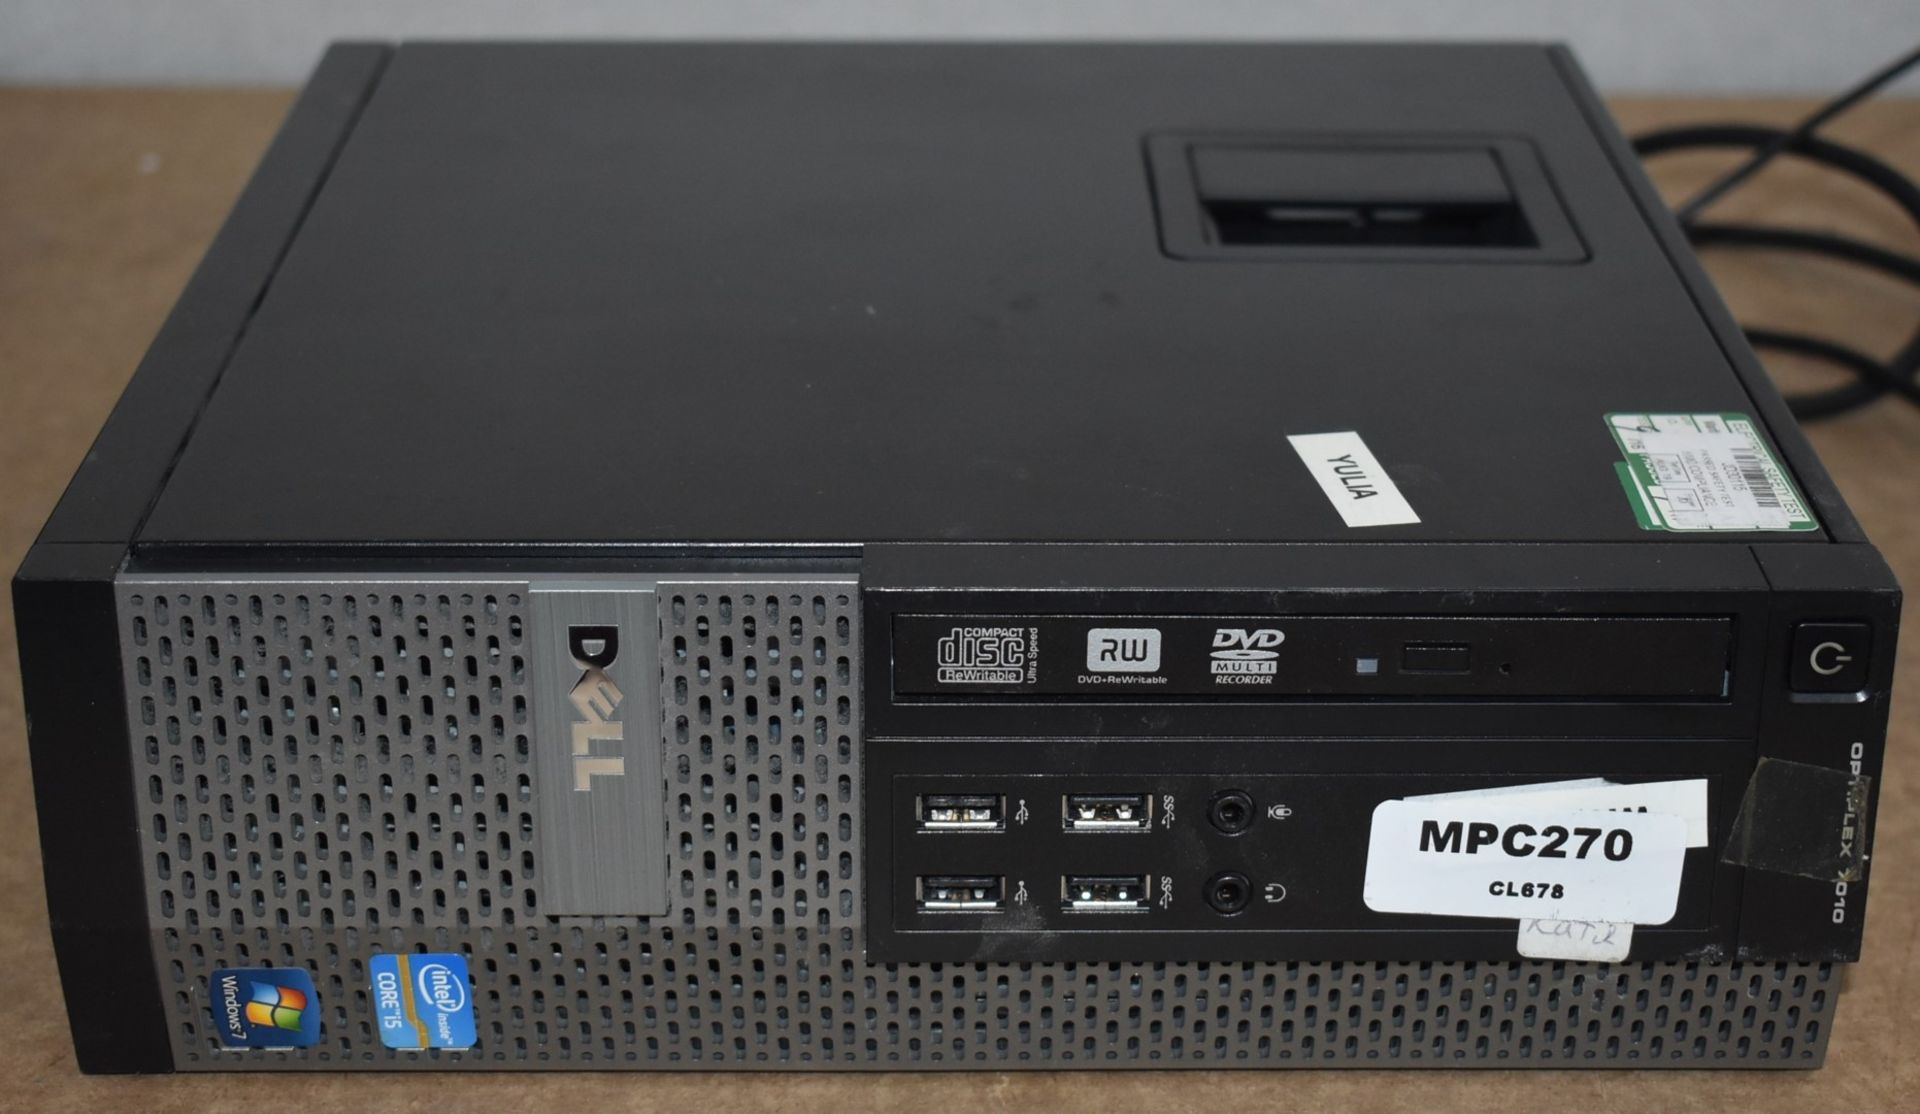 1 x Dell OptiPlex 7010 SFF Desktop PC Featuring an Intel i5-5470 Processor and 4gb Ram - Hard